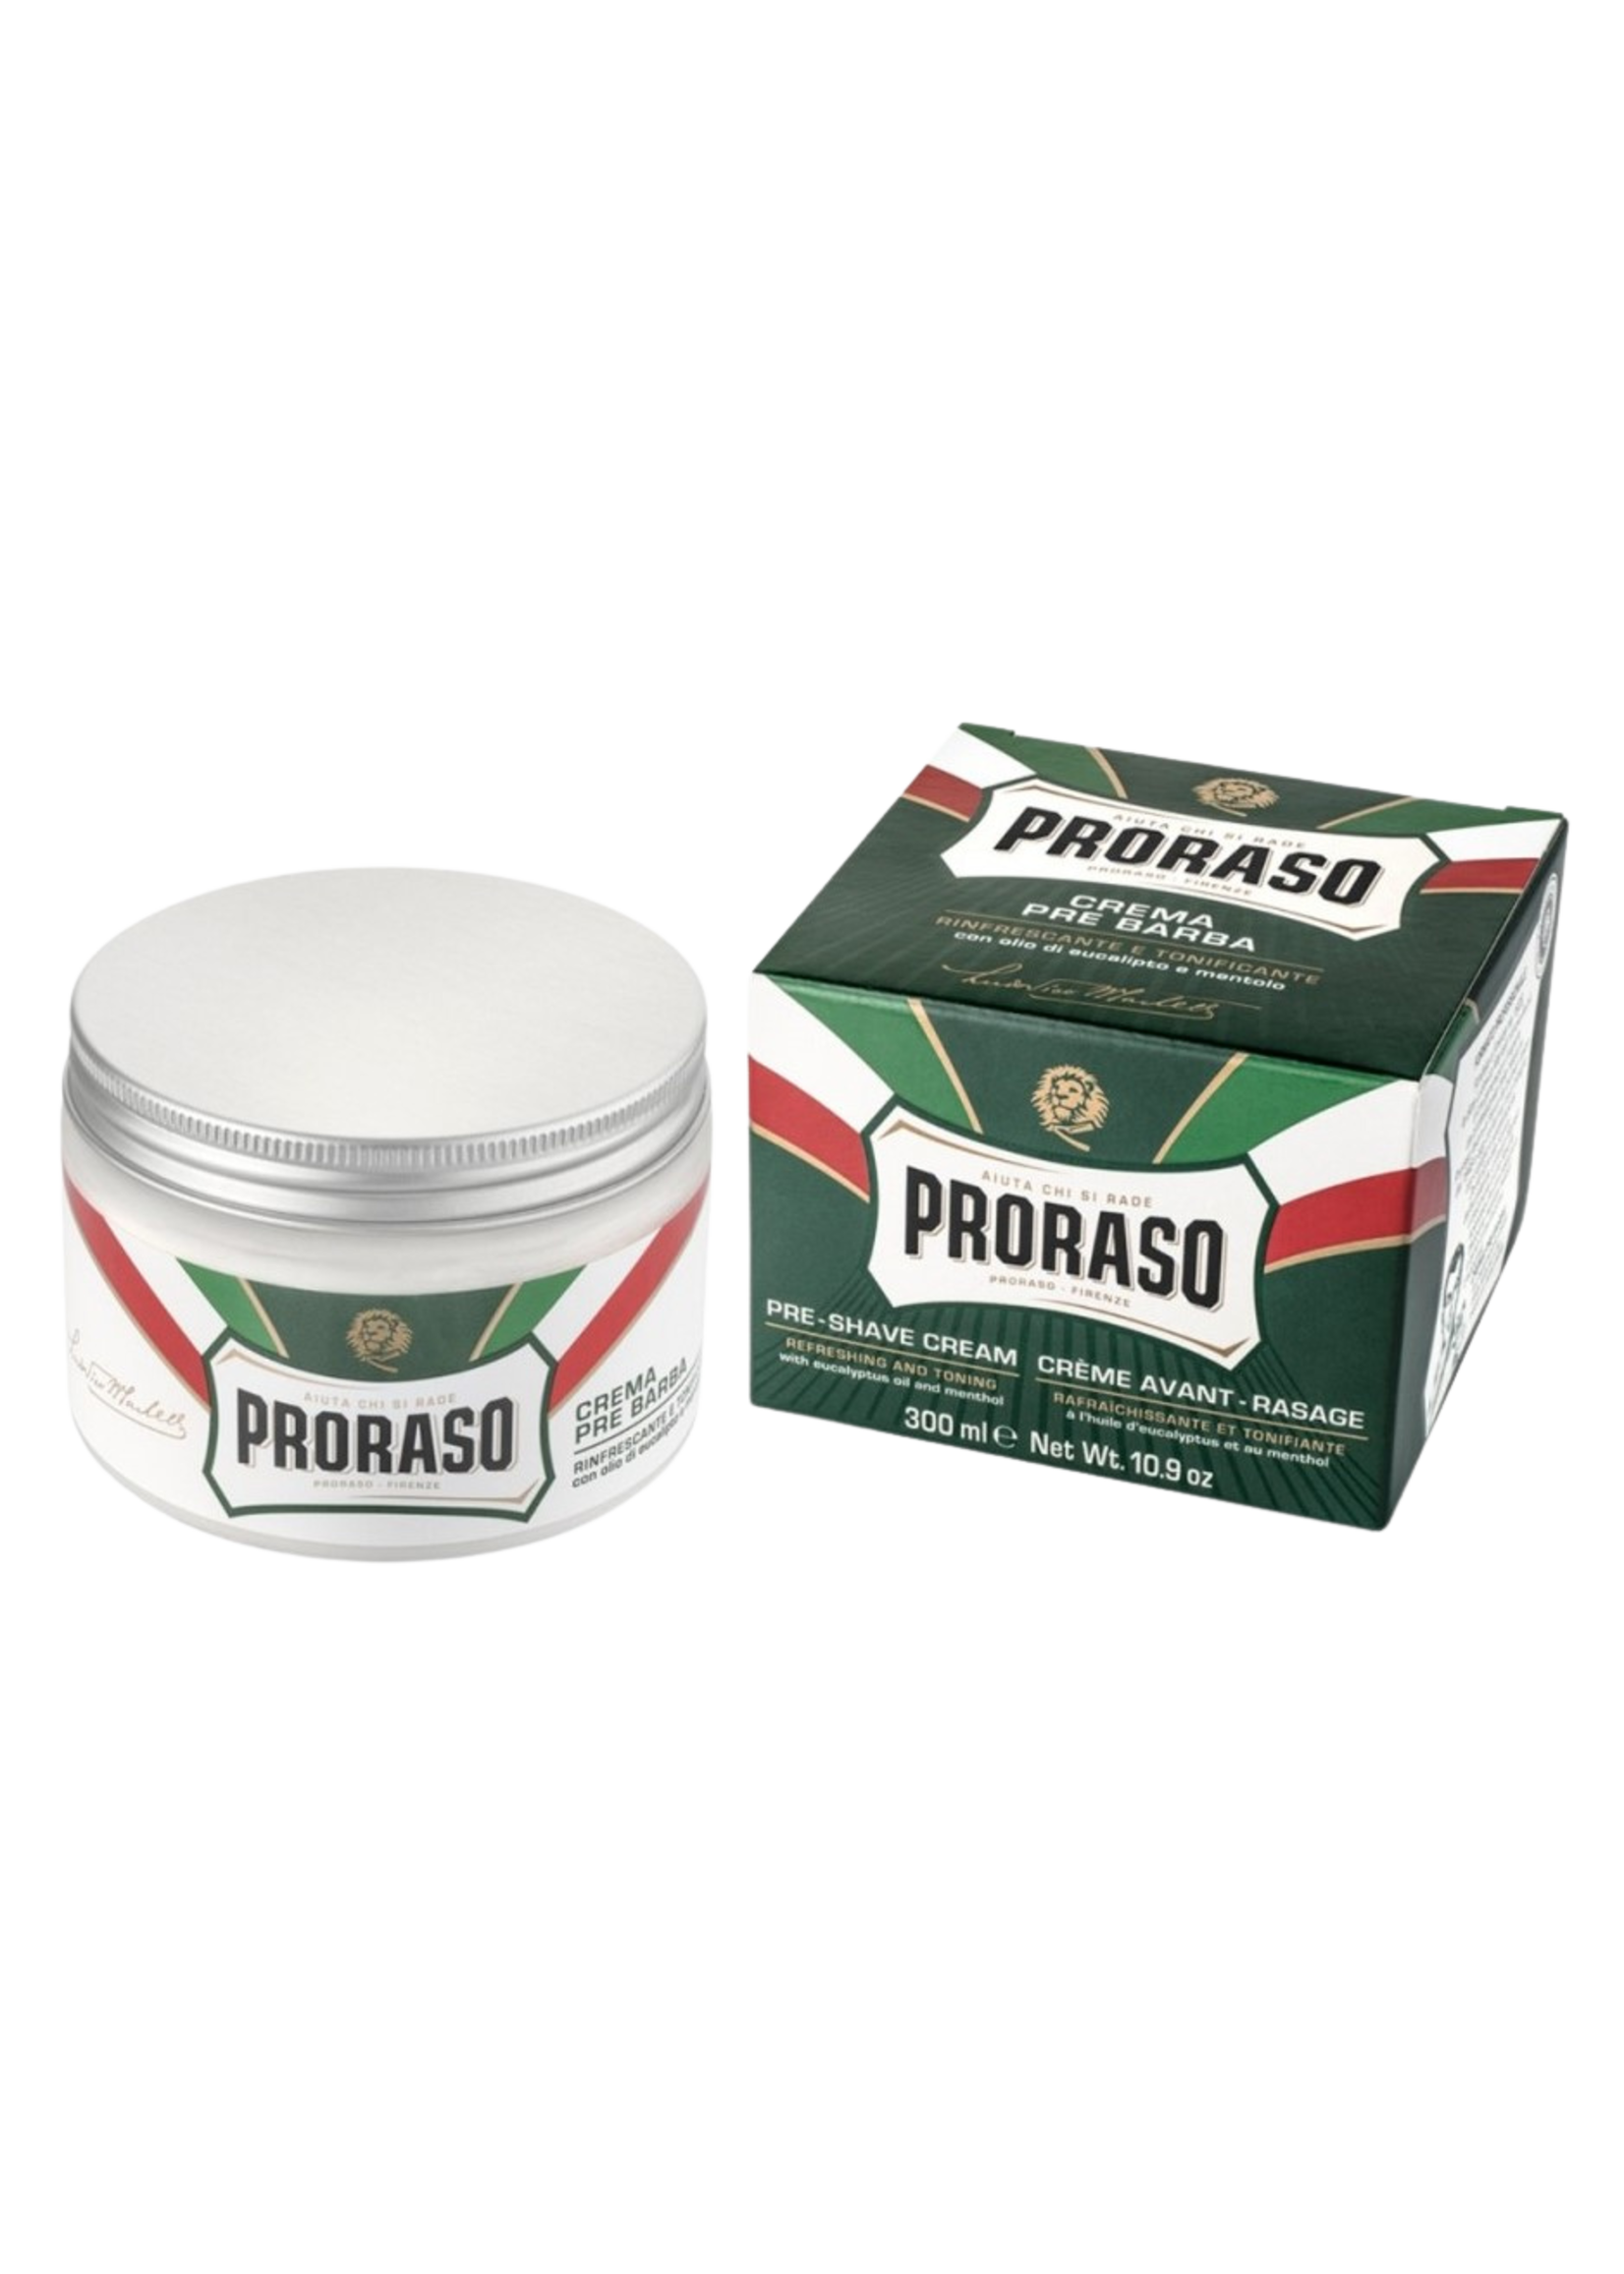 Proraso Proraso Pre-shave Cream Refresh 300ml